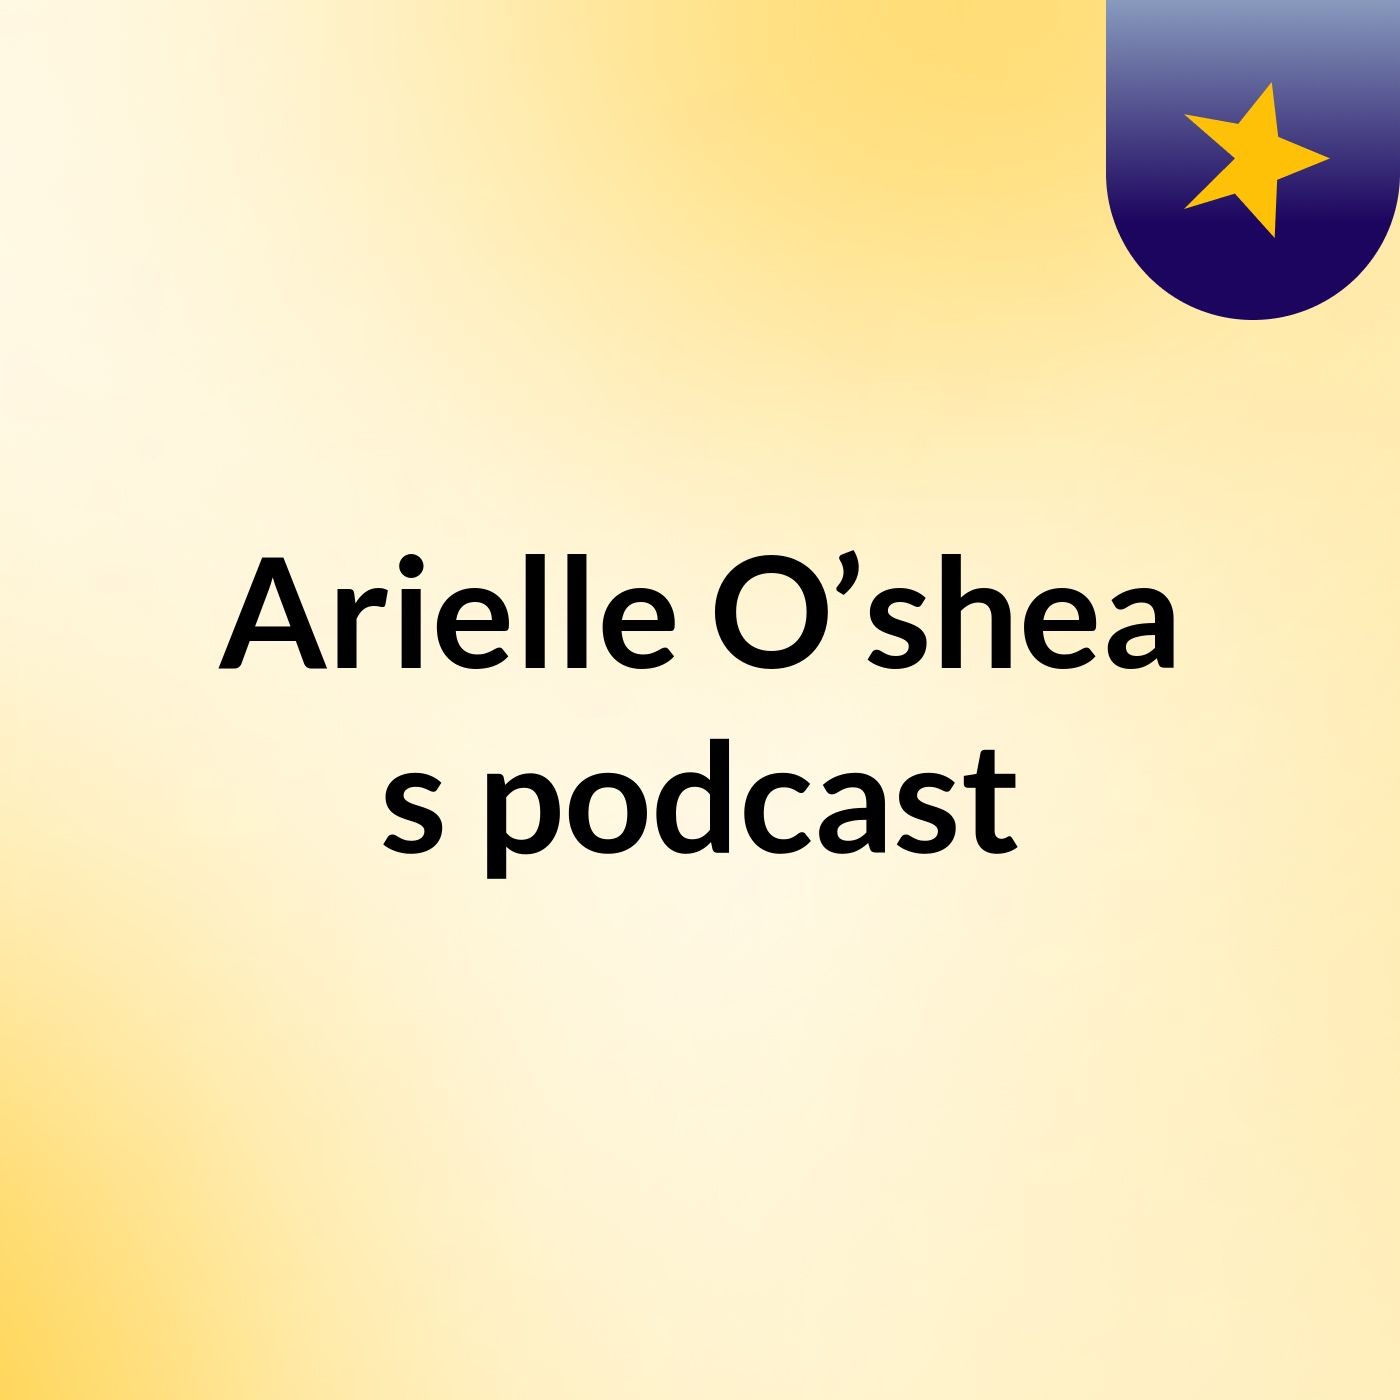 Arielle O’shea's podcast